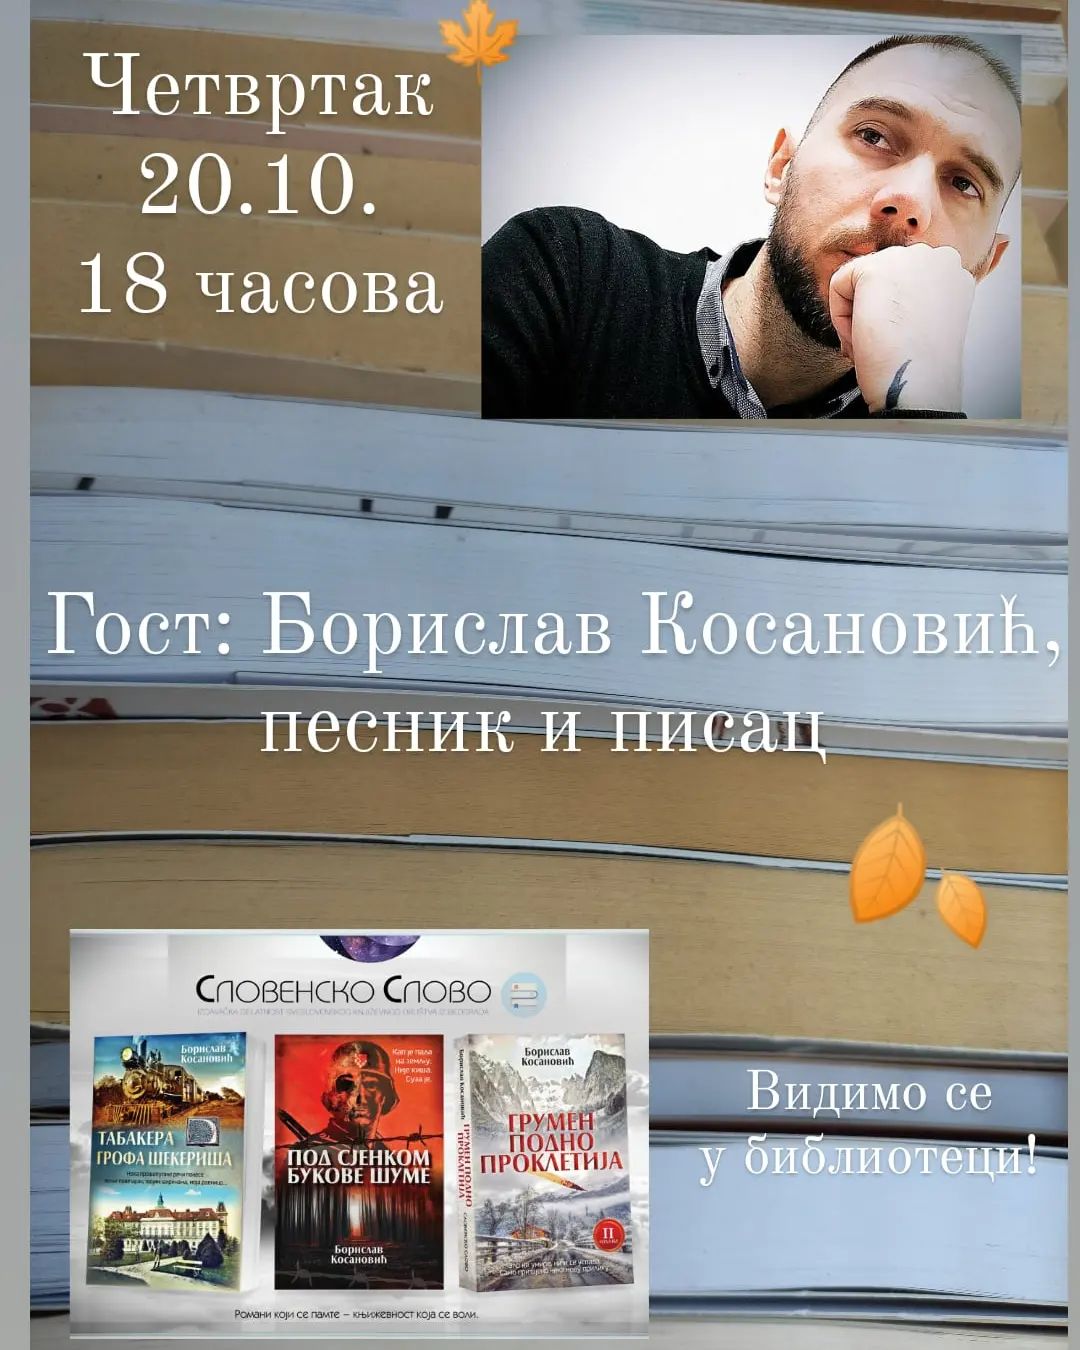 Борислав Косановић, песник и писац биће гост Библиотеке